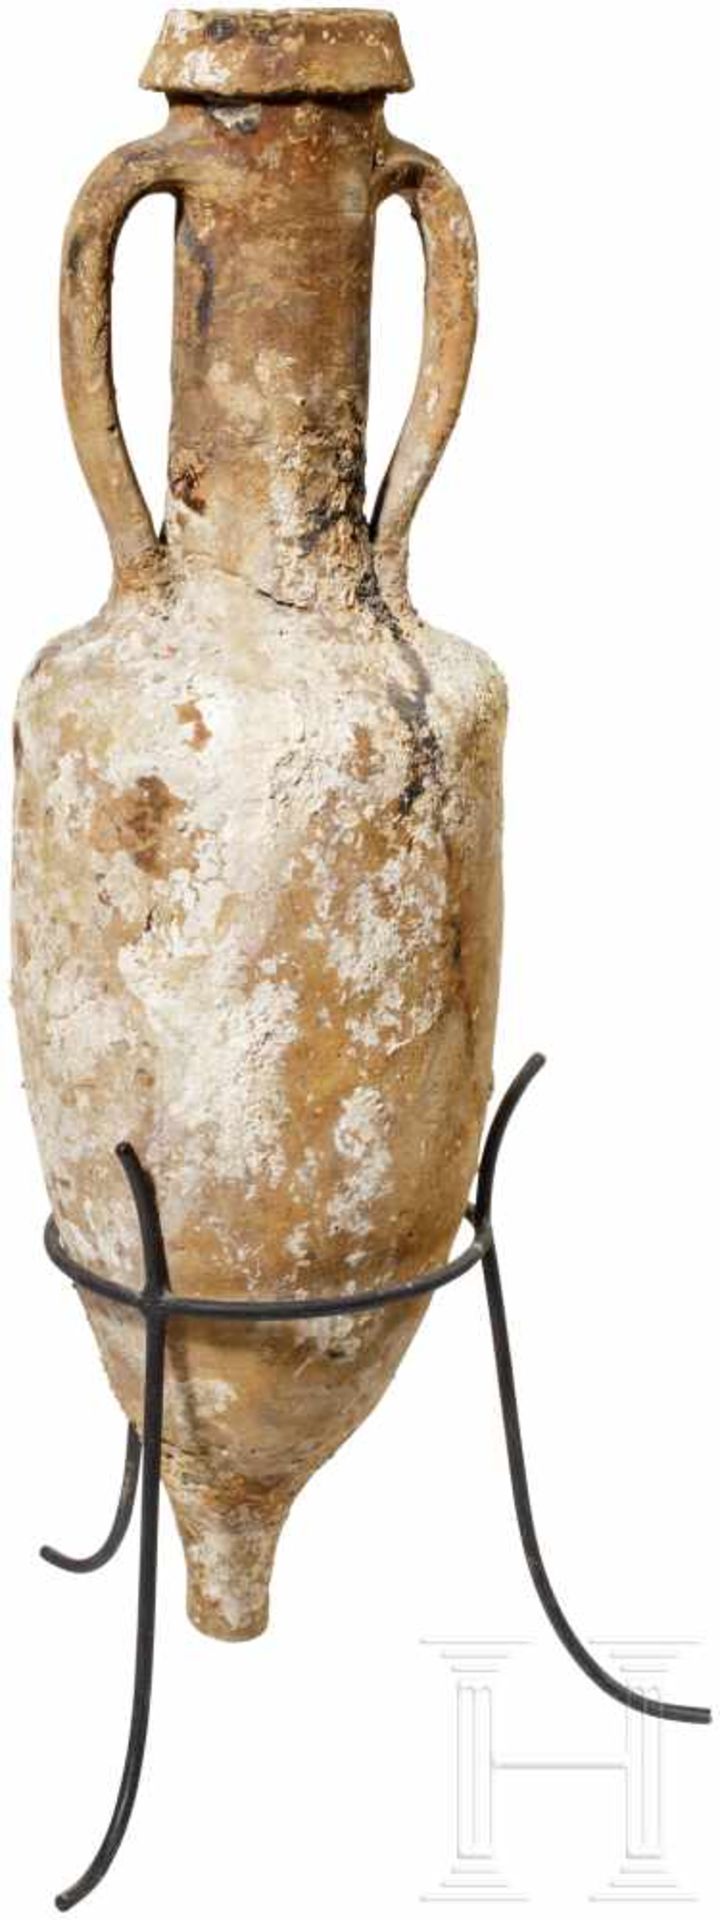 Weinamphore des Typs Dressel 1c, römisch, ca. 100 v. Chr.Schlanke Weinamphore mit hohem - Bild 2 aus 2